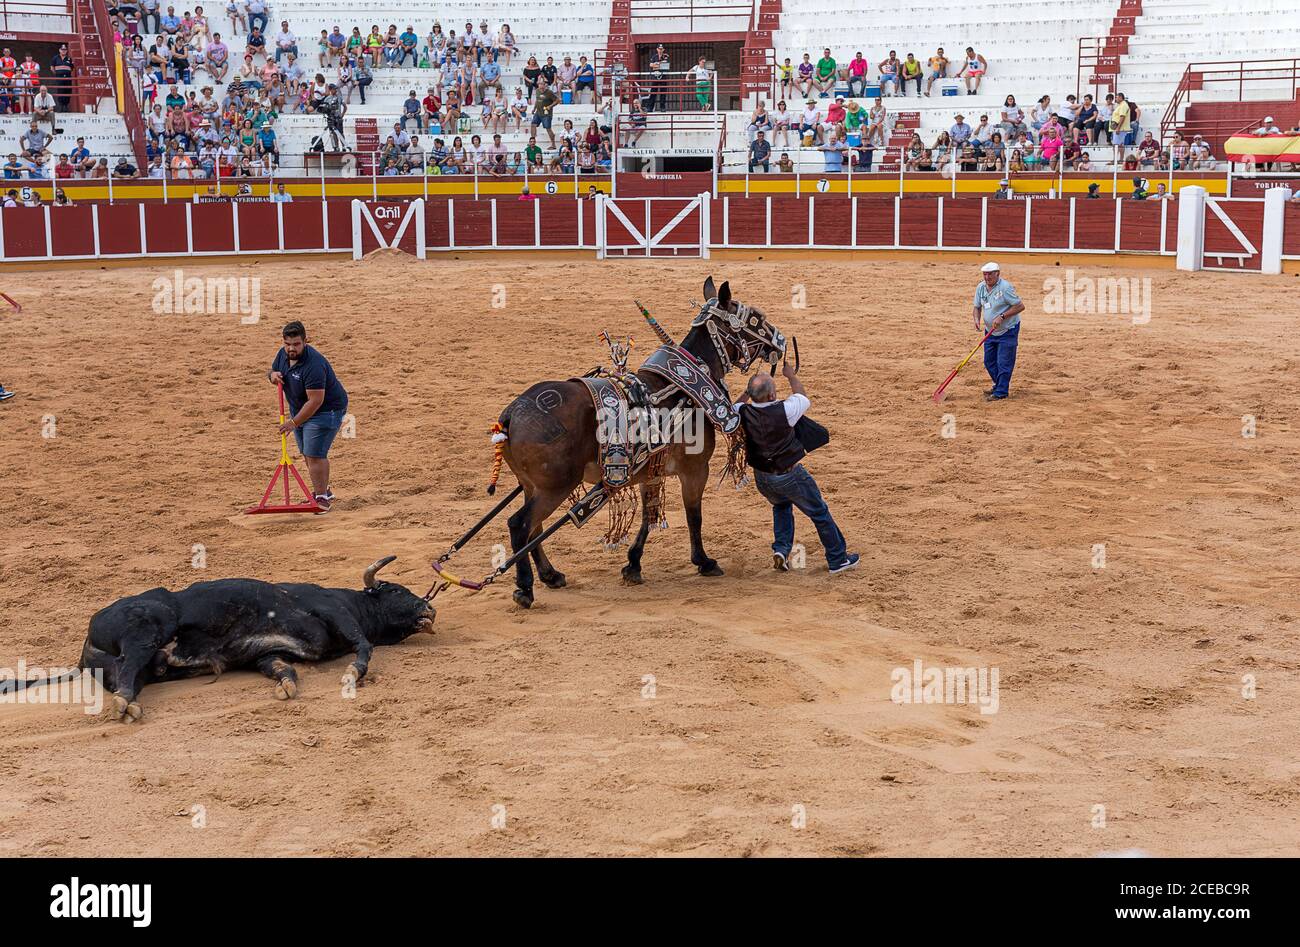 Espagne, Tomelloso - 28. 08. 2018. Vue sur les ouvriers qui organisent du sable sur le terrain de l'arène et sur l'homme qui porte un taureau mort avec un cheval Banque D'Images